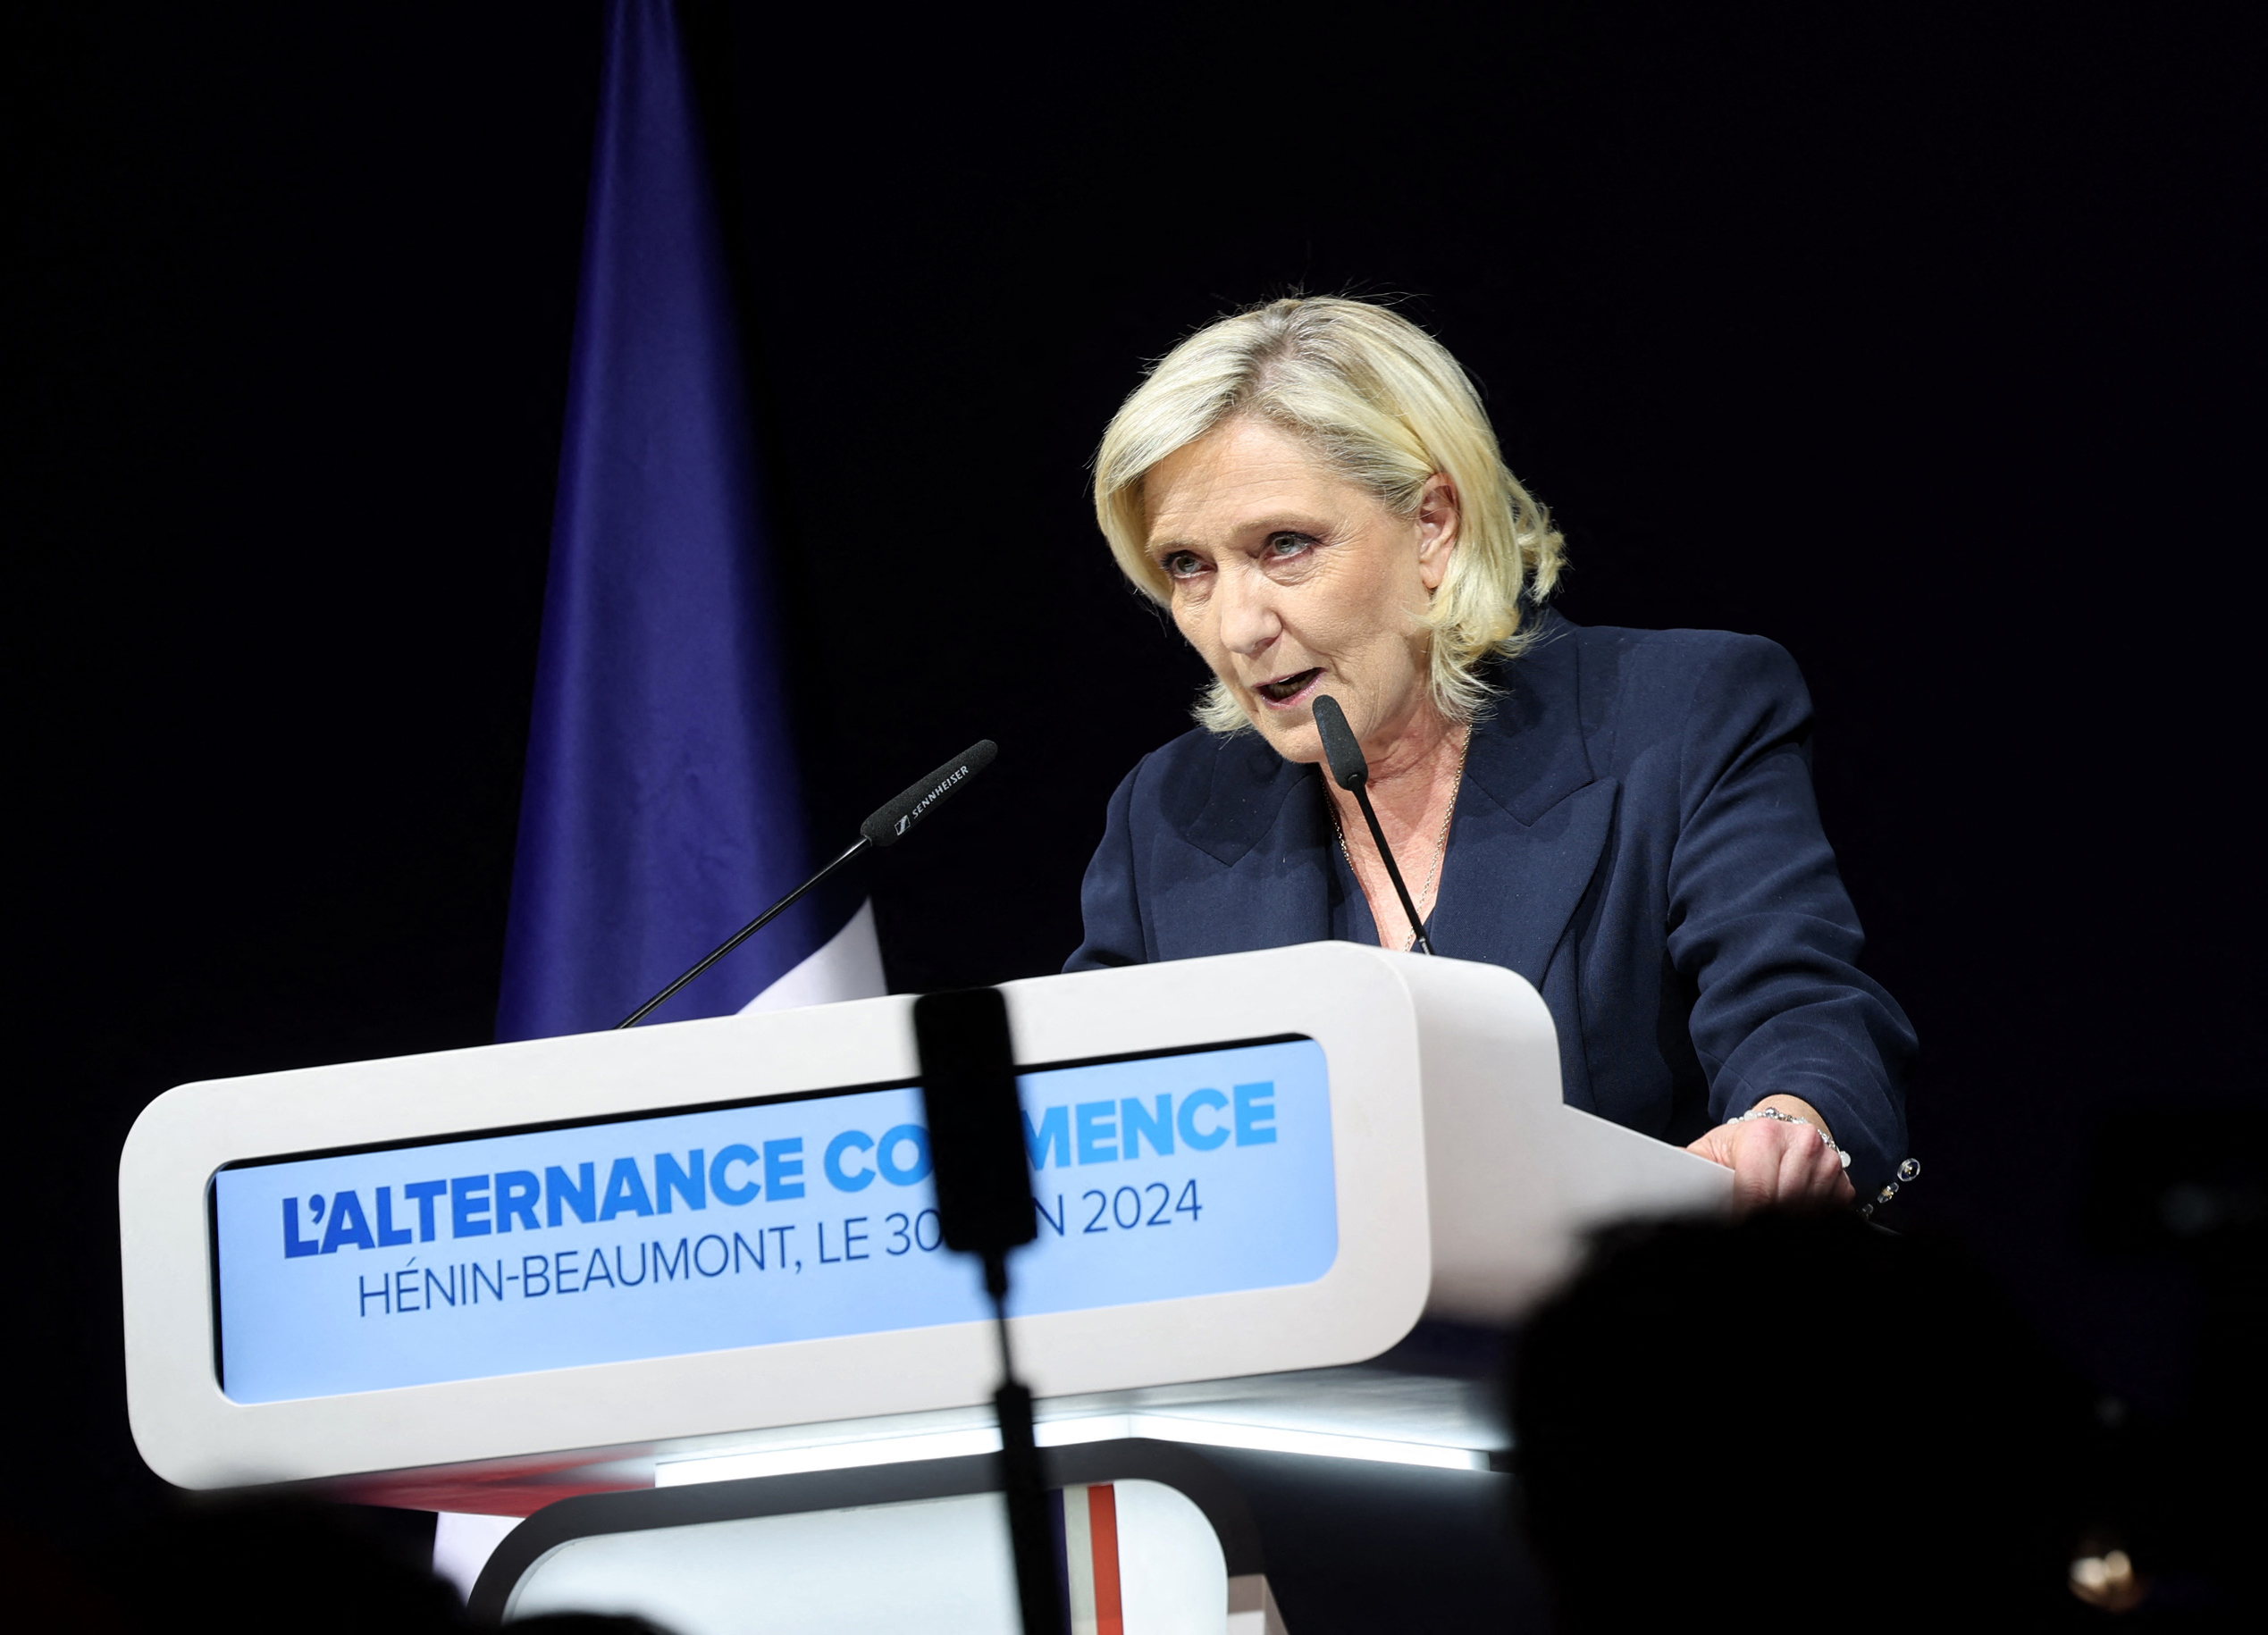 Rezultate Exitpoll. Extrema dreaptă a câștigat alegerile din Franța. Macron cere o „mare alianță democratică și republicană” în turul 2